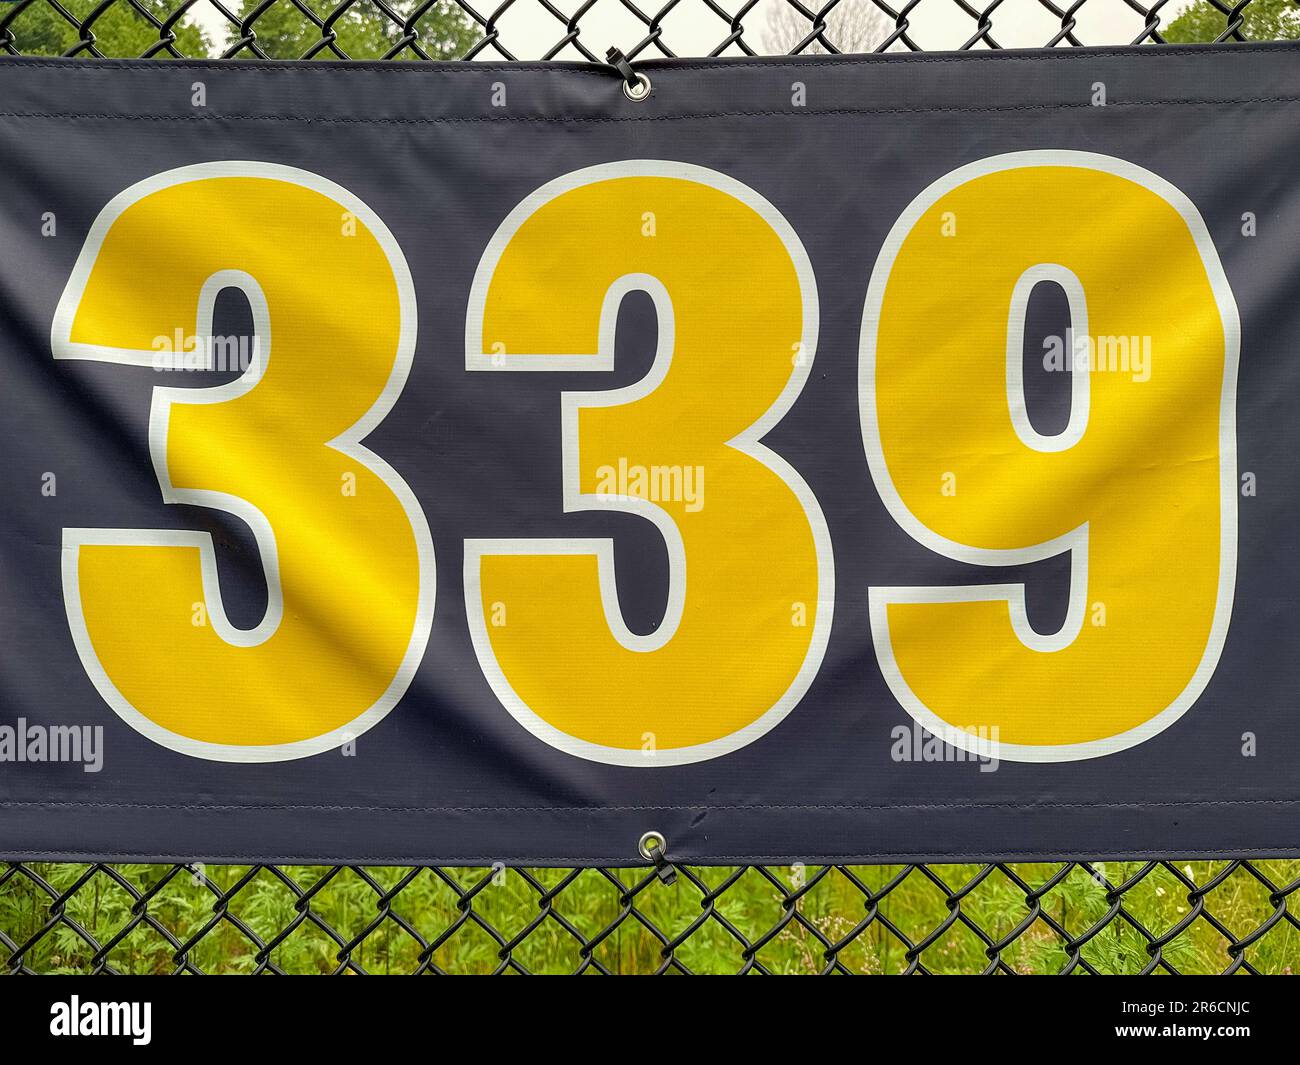 339 piedi ft campo da baseball segno di distanza in giallo e nero montato sulla recinzione di vinile nero. Foto Stock